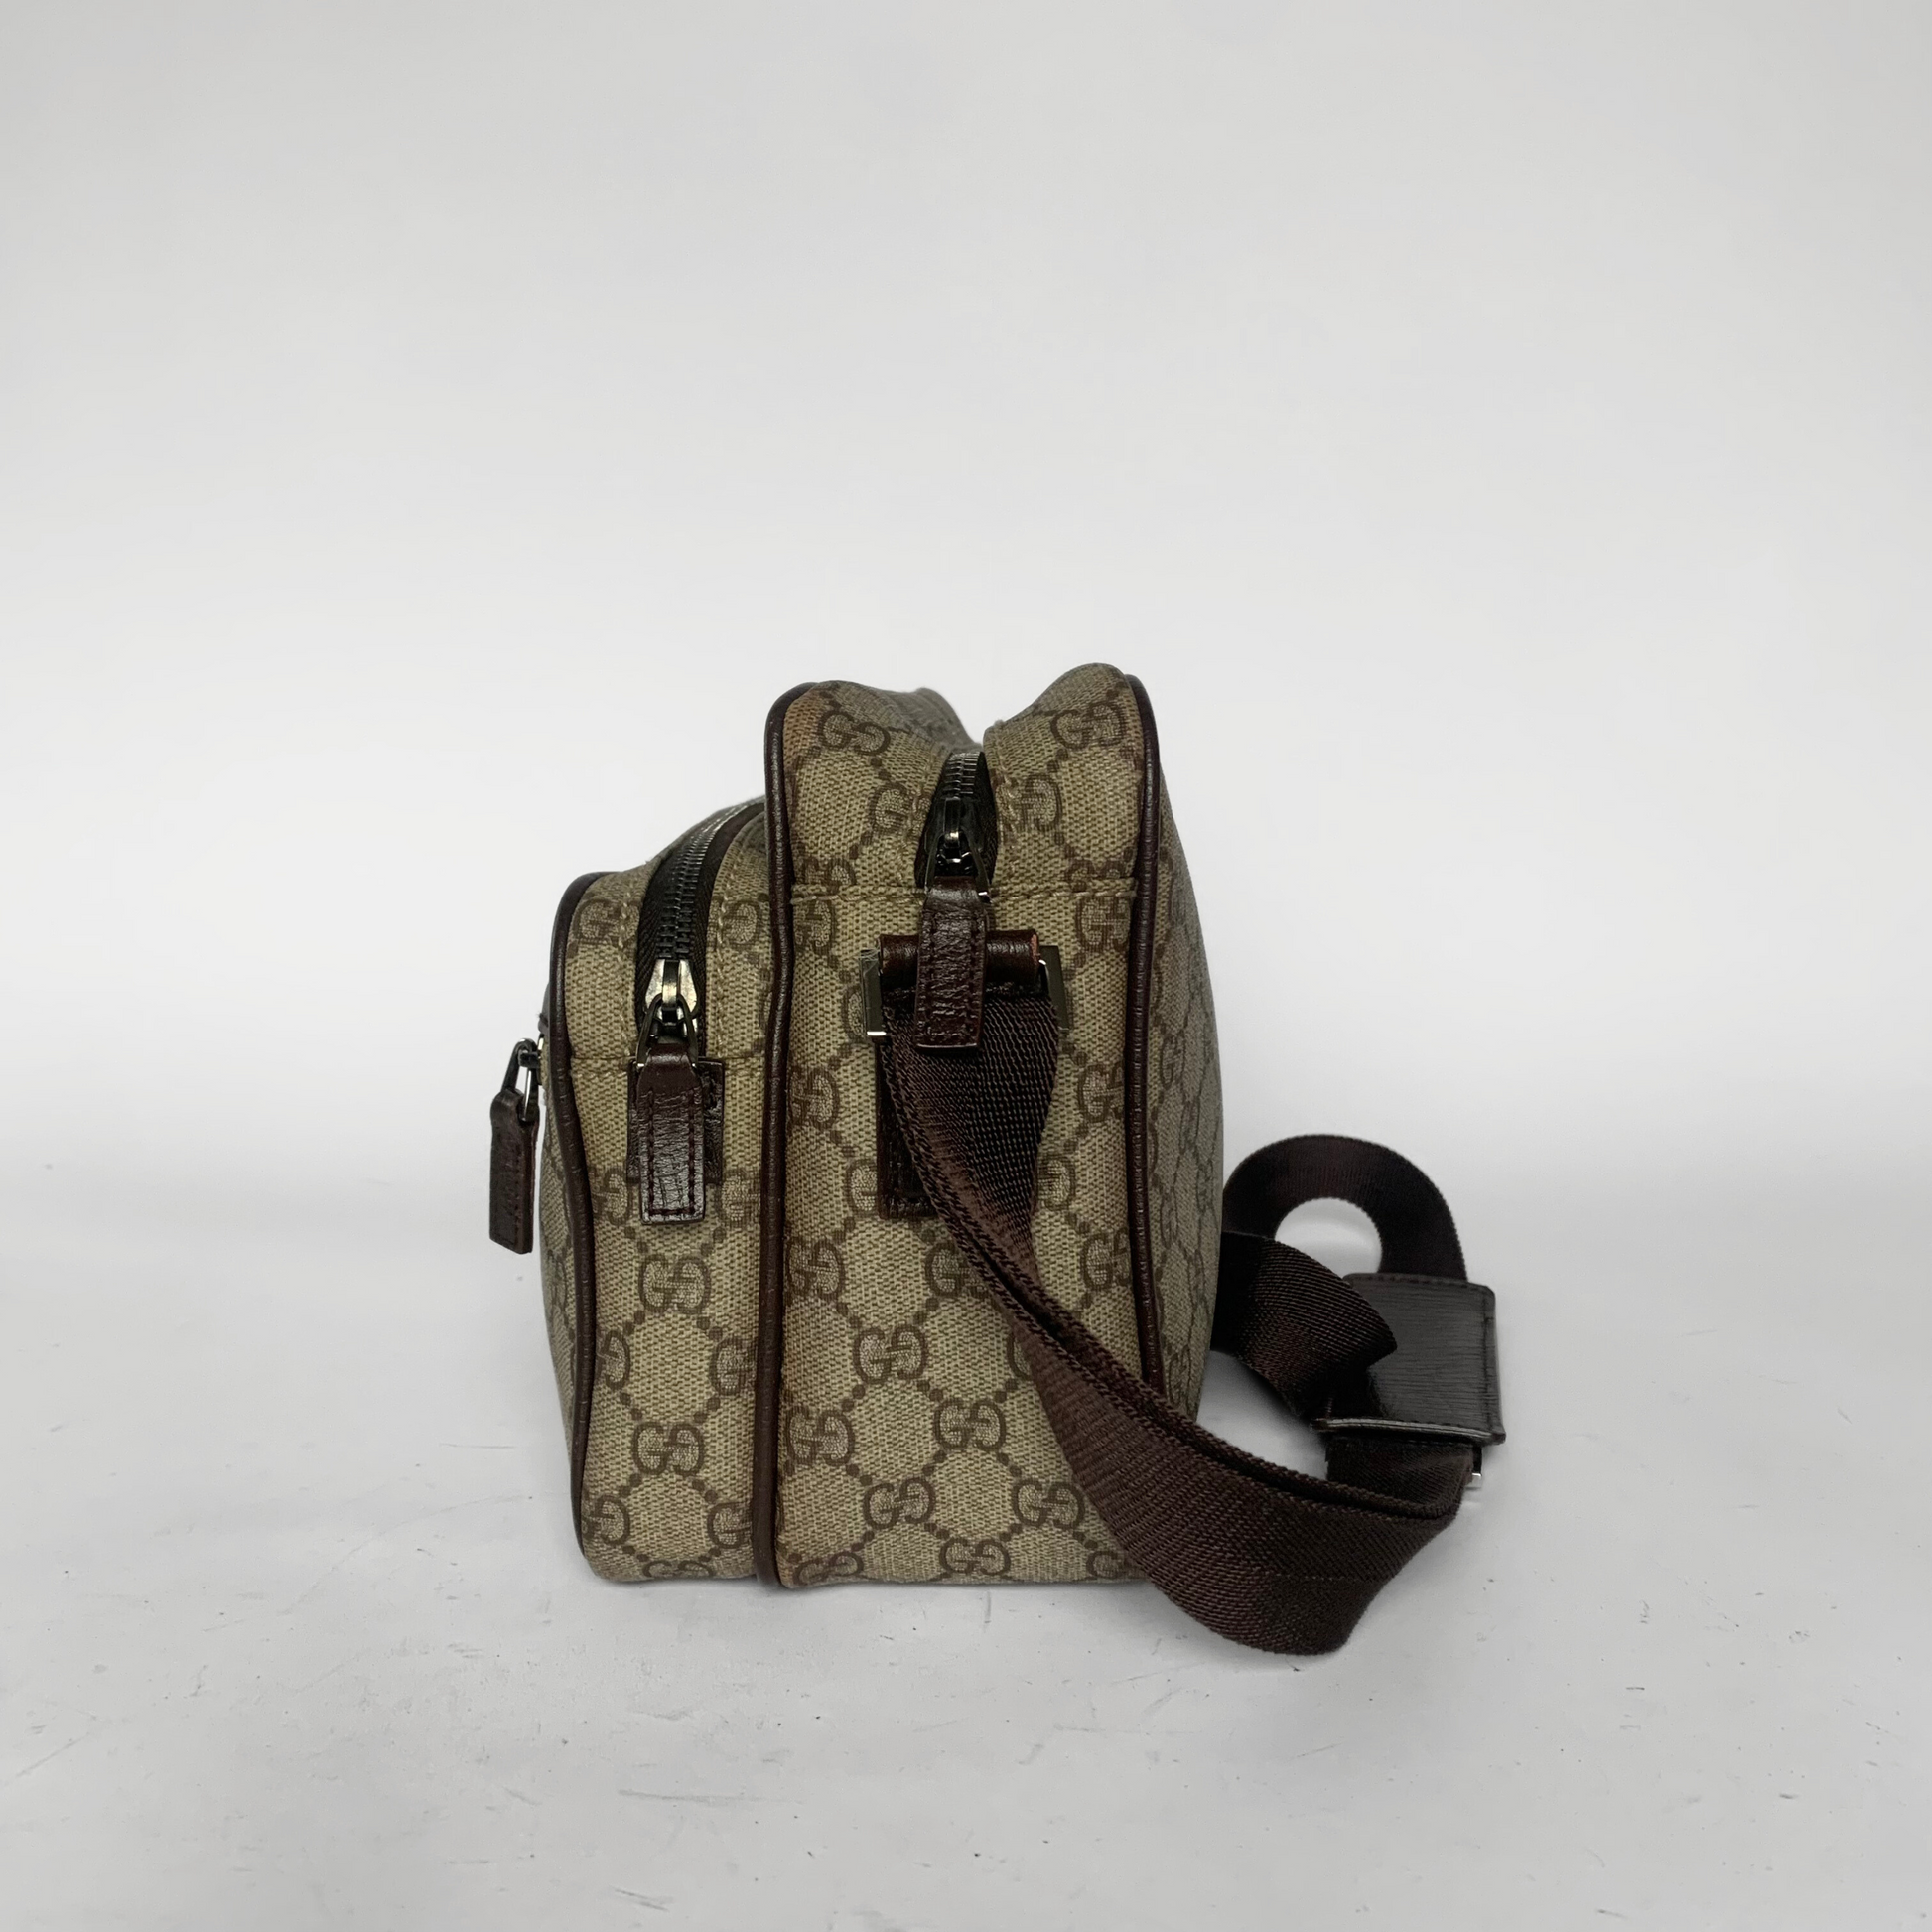 Gucci Gucci Supreme Umhängetasche PVC - Umhängetaschen - Etoile Luxury Vintage